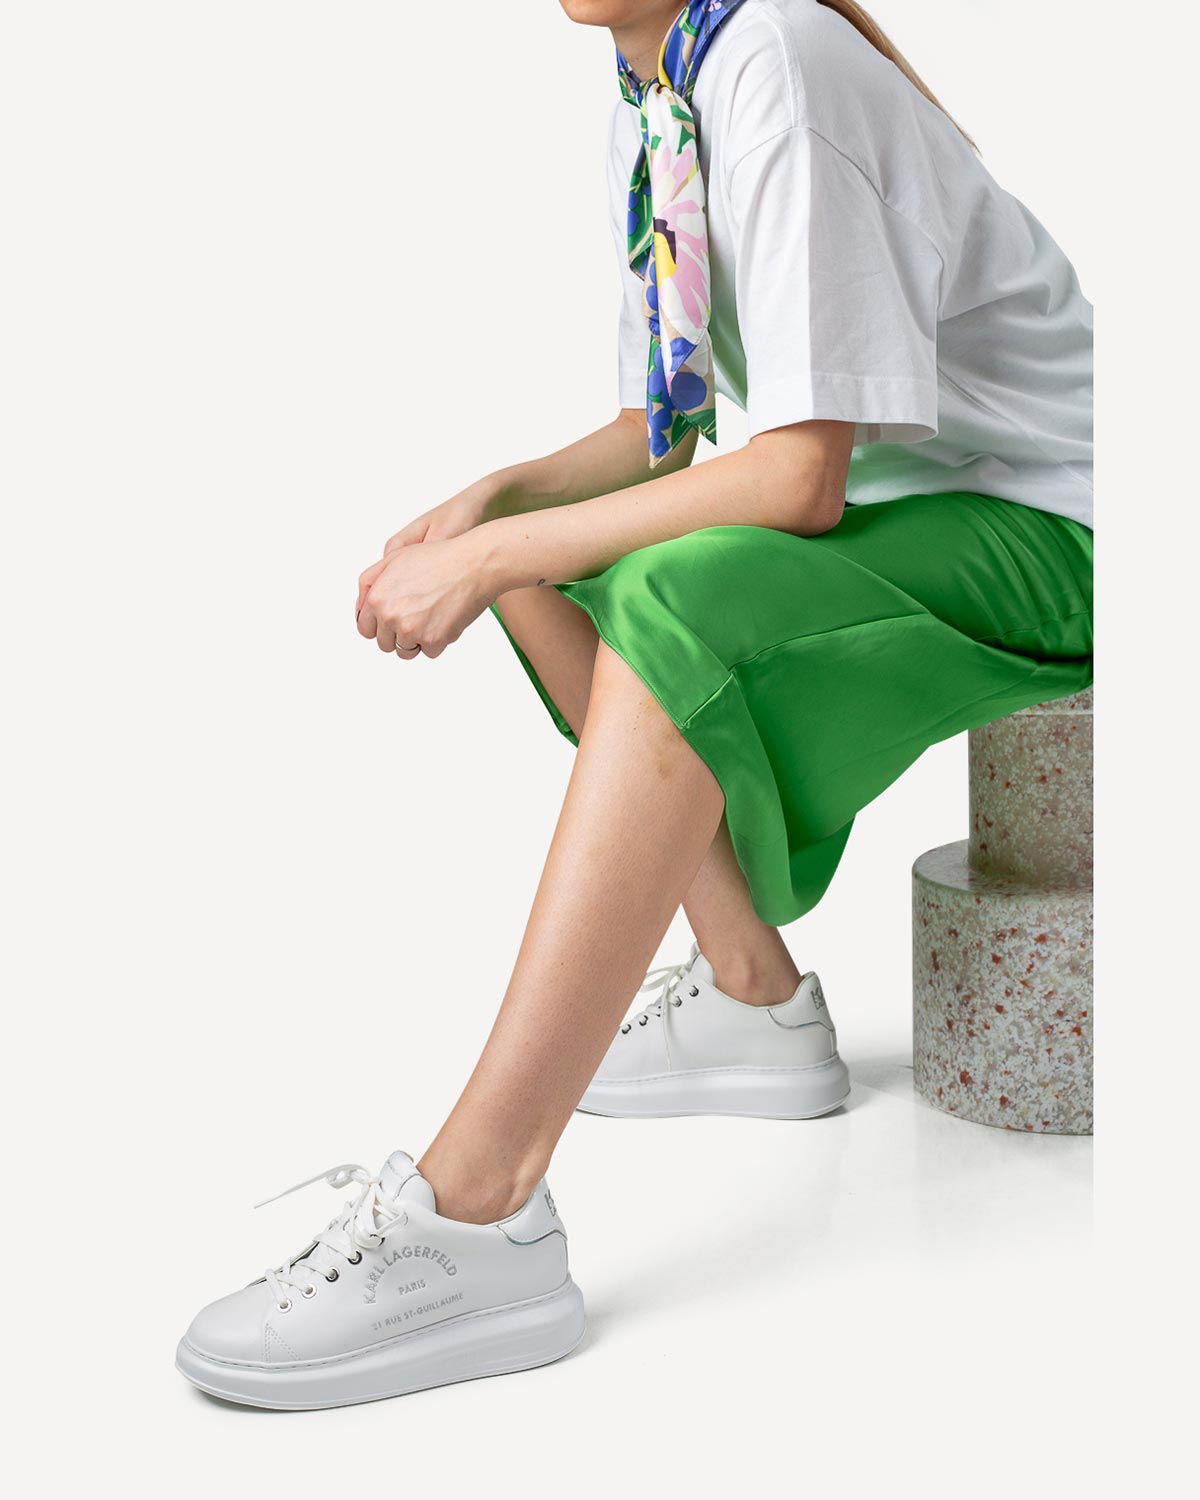 Γυναίκα - Sneakers - Karl Lagerfeld Λευκό-Ασημί